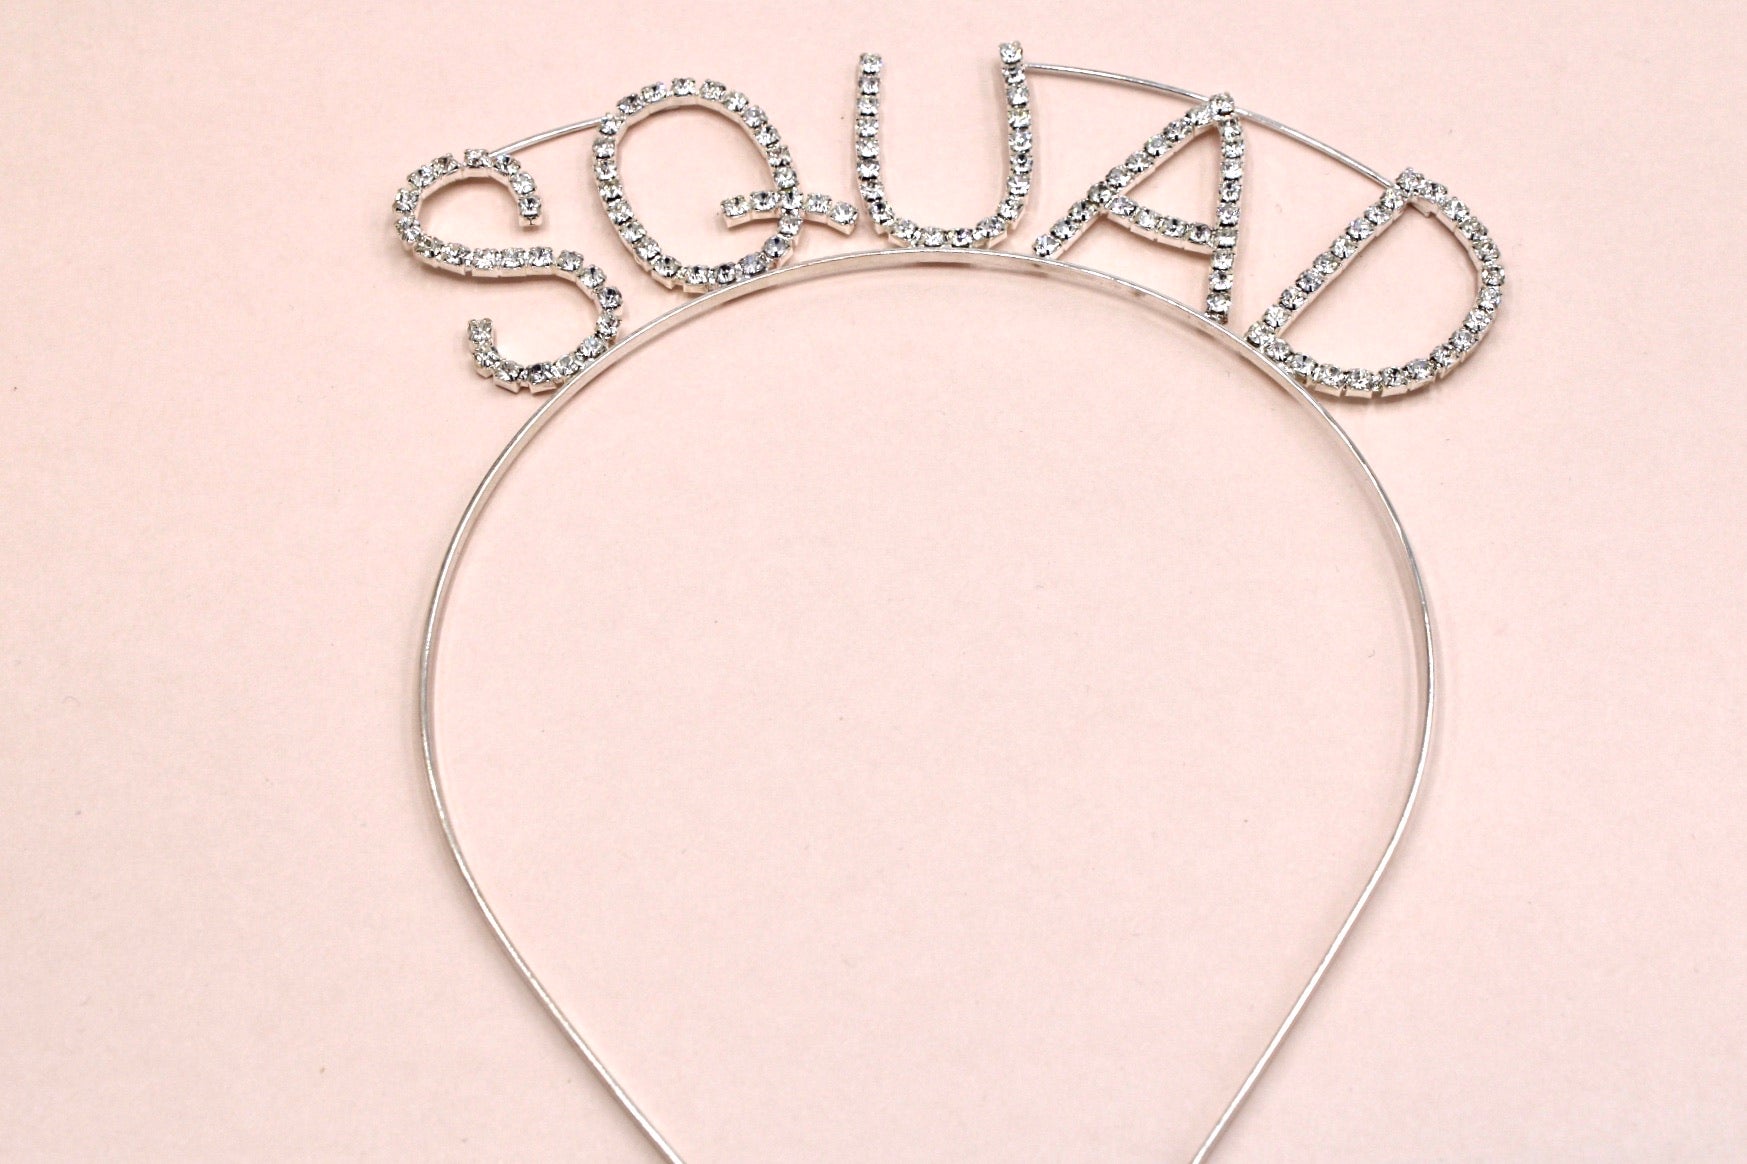 Squad headband - Monique Fashion Accessories